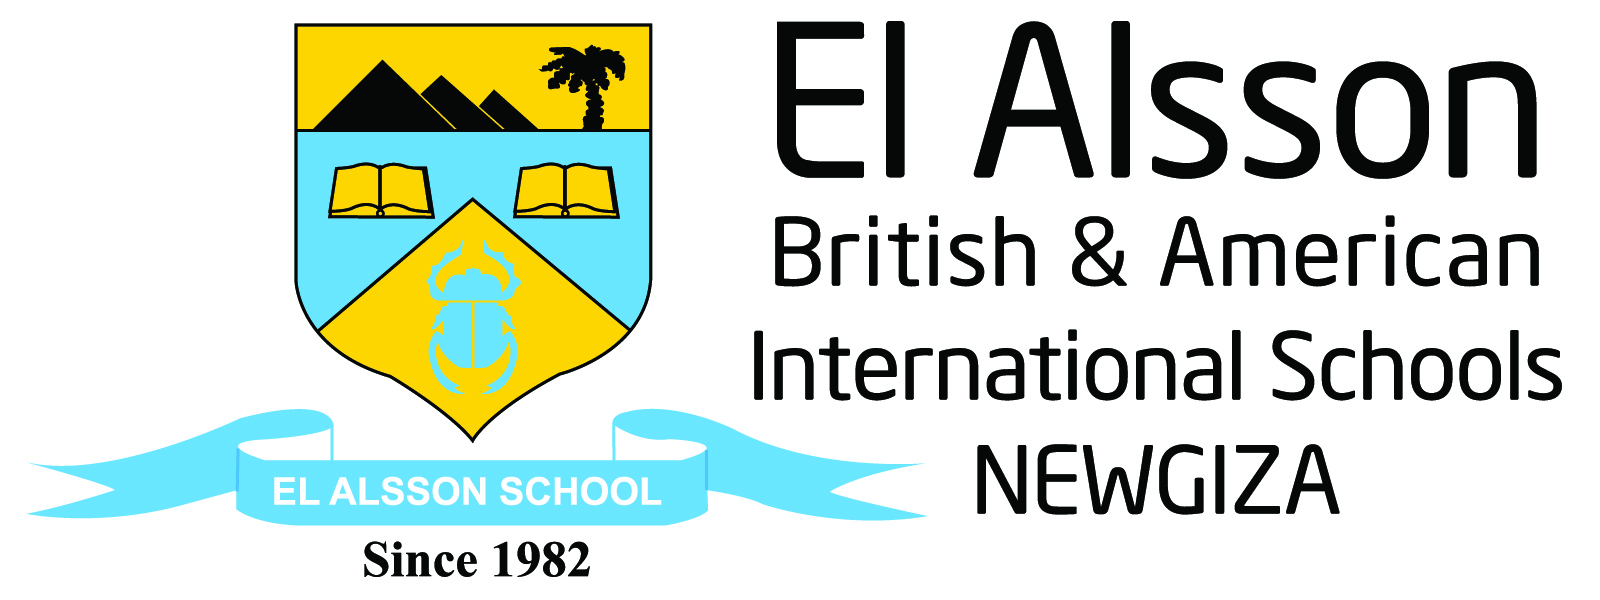 El Alsson British & American International Schools